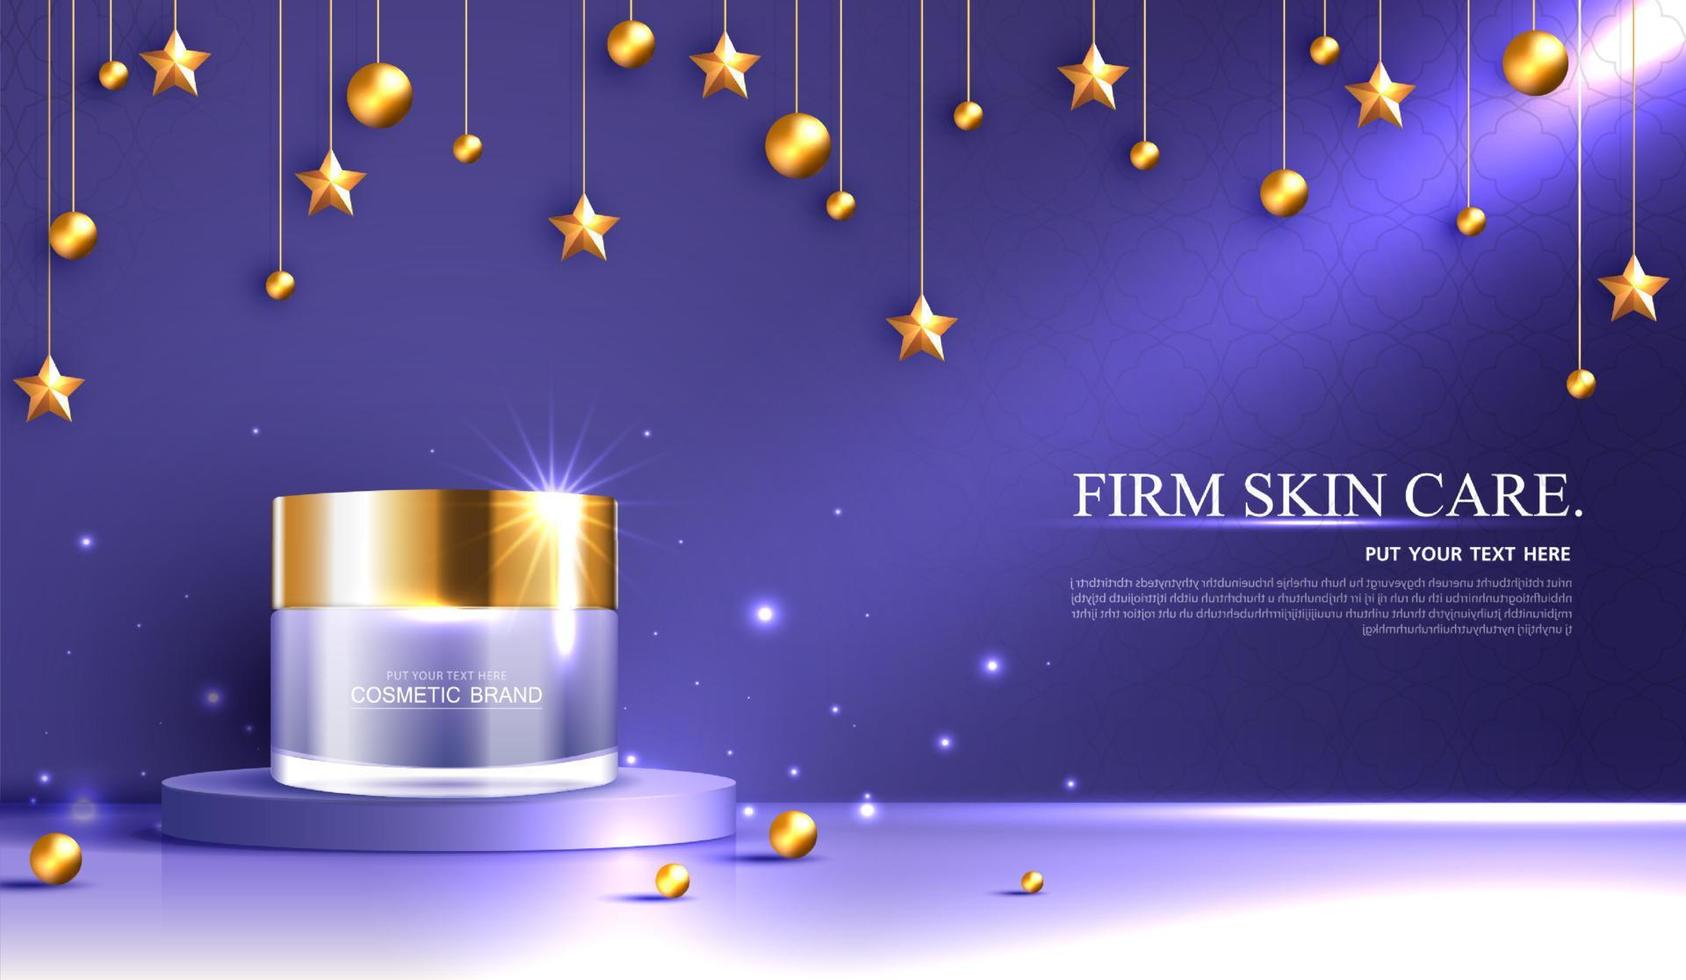 nattkosmetika eller hudvårdsprodukter annonser med flaska, bannerannons för skönhetsprodukter, stjärna och gyllene pärla på lila bakgrund glittrande ljuseffekt. vektor design